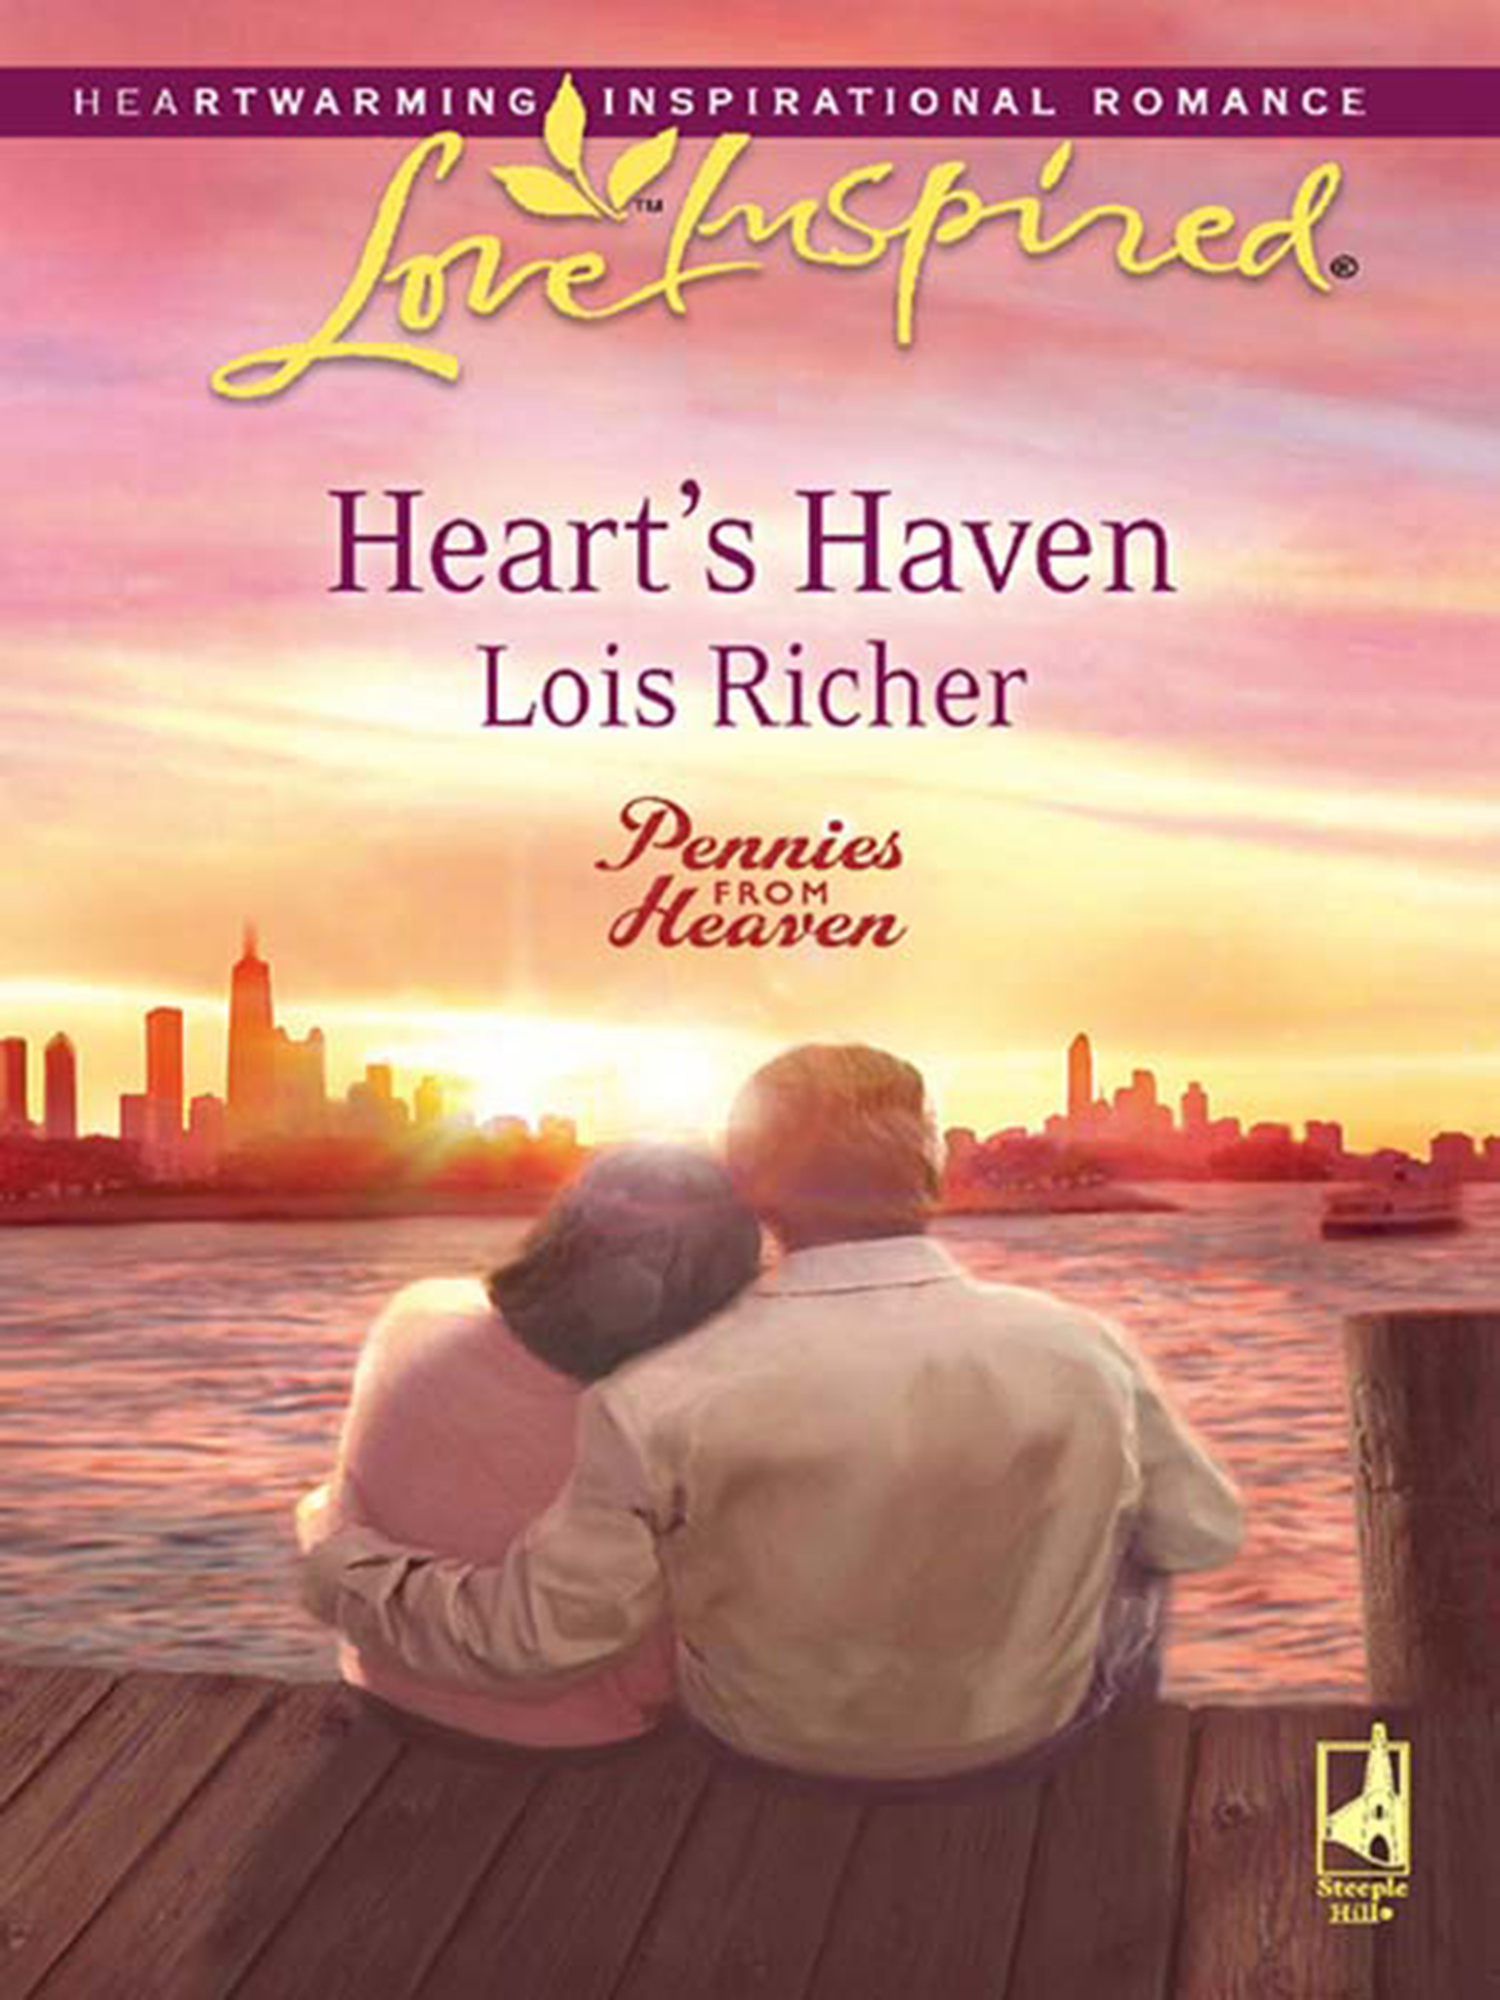 Heart’s Haven – Lois Richer, HarperCollins Publishers